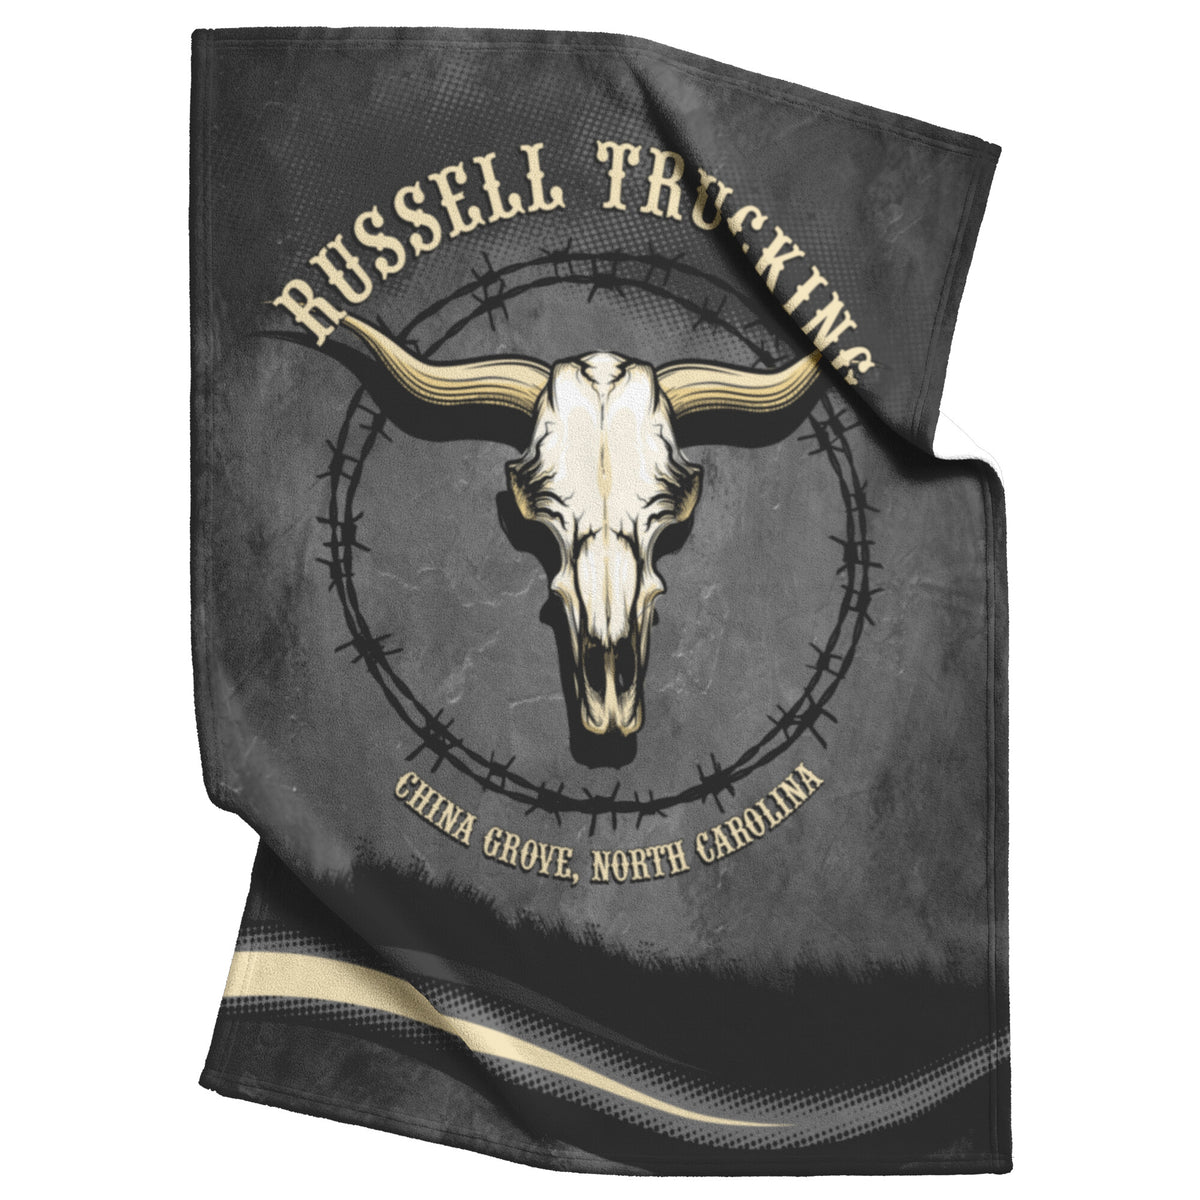 Russell Trucking Fleece Blanket